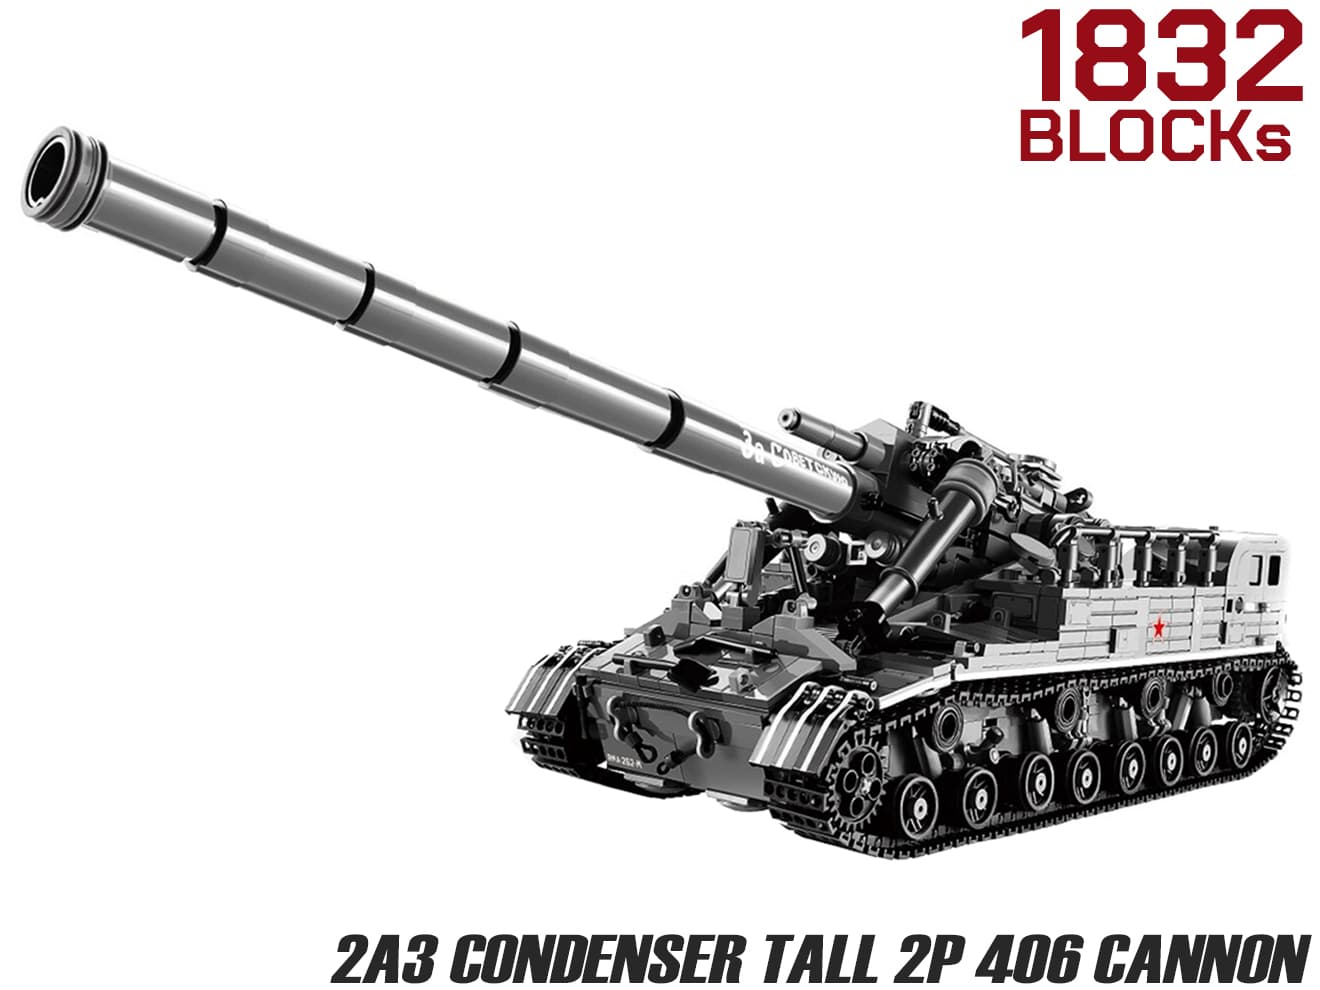 AFM 2A3 コンデンサトール 2P 406mmカノン砲 1832Blocks